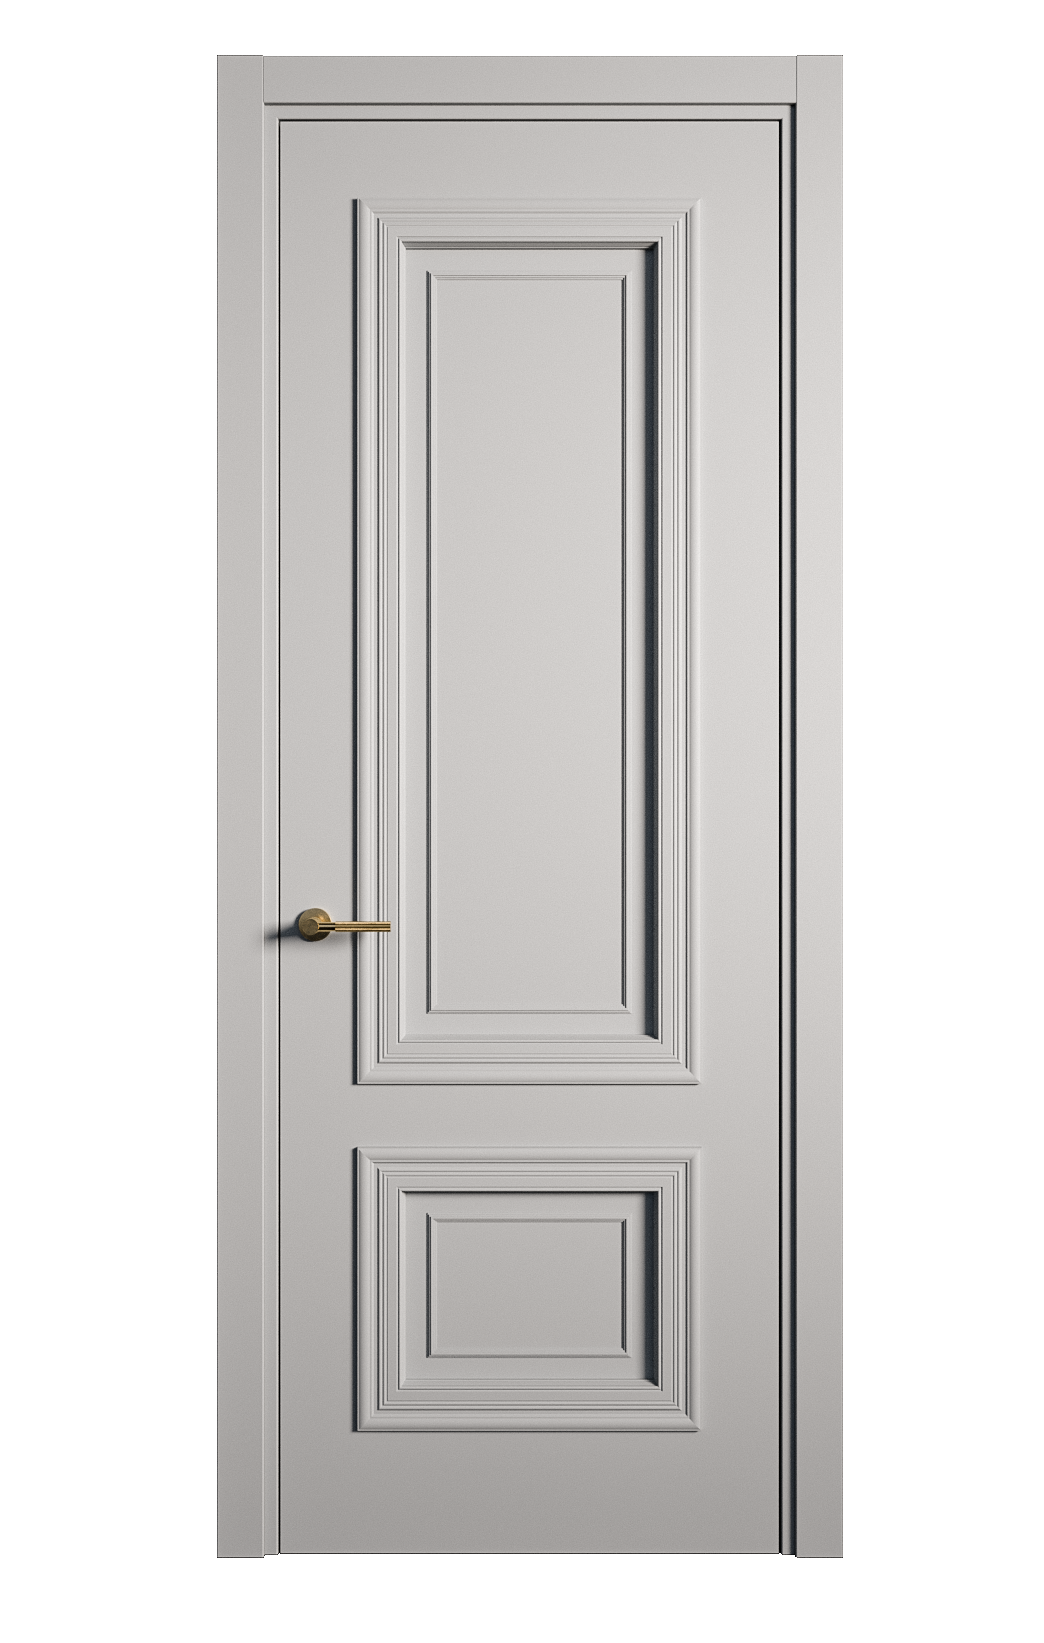 Межкомнатная дверь Мальта-1 глухая эмаль ral 7040 21843